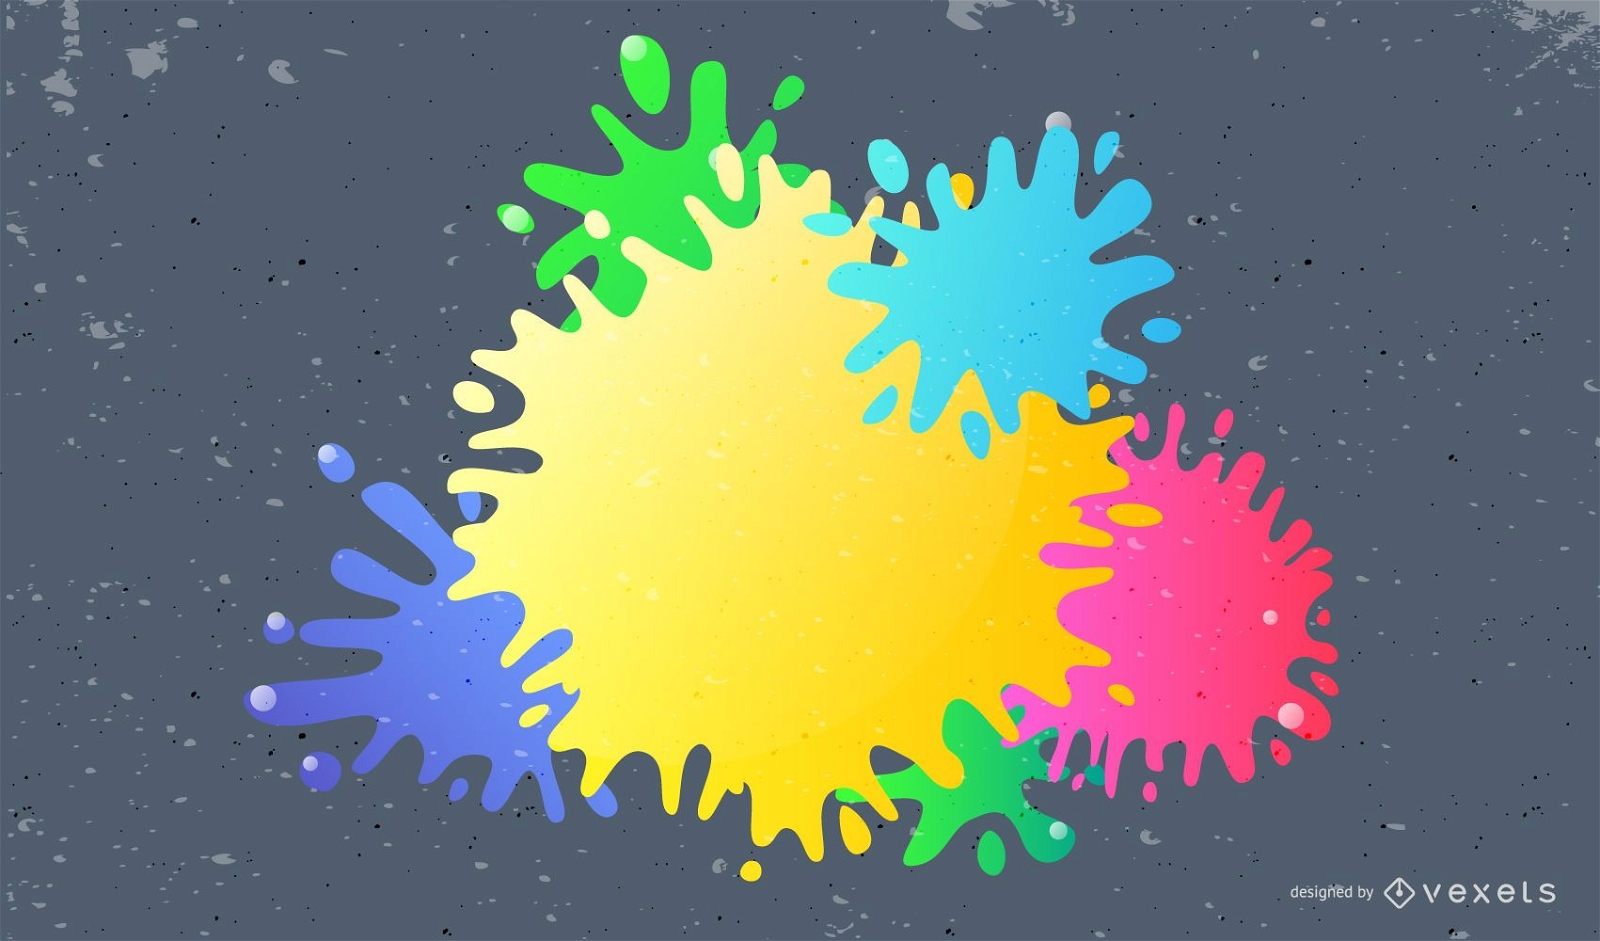 Colorful 3D paint splatters